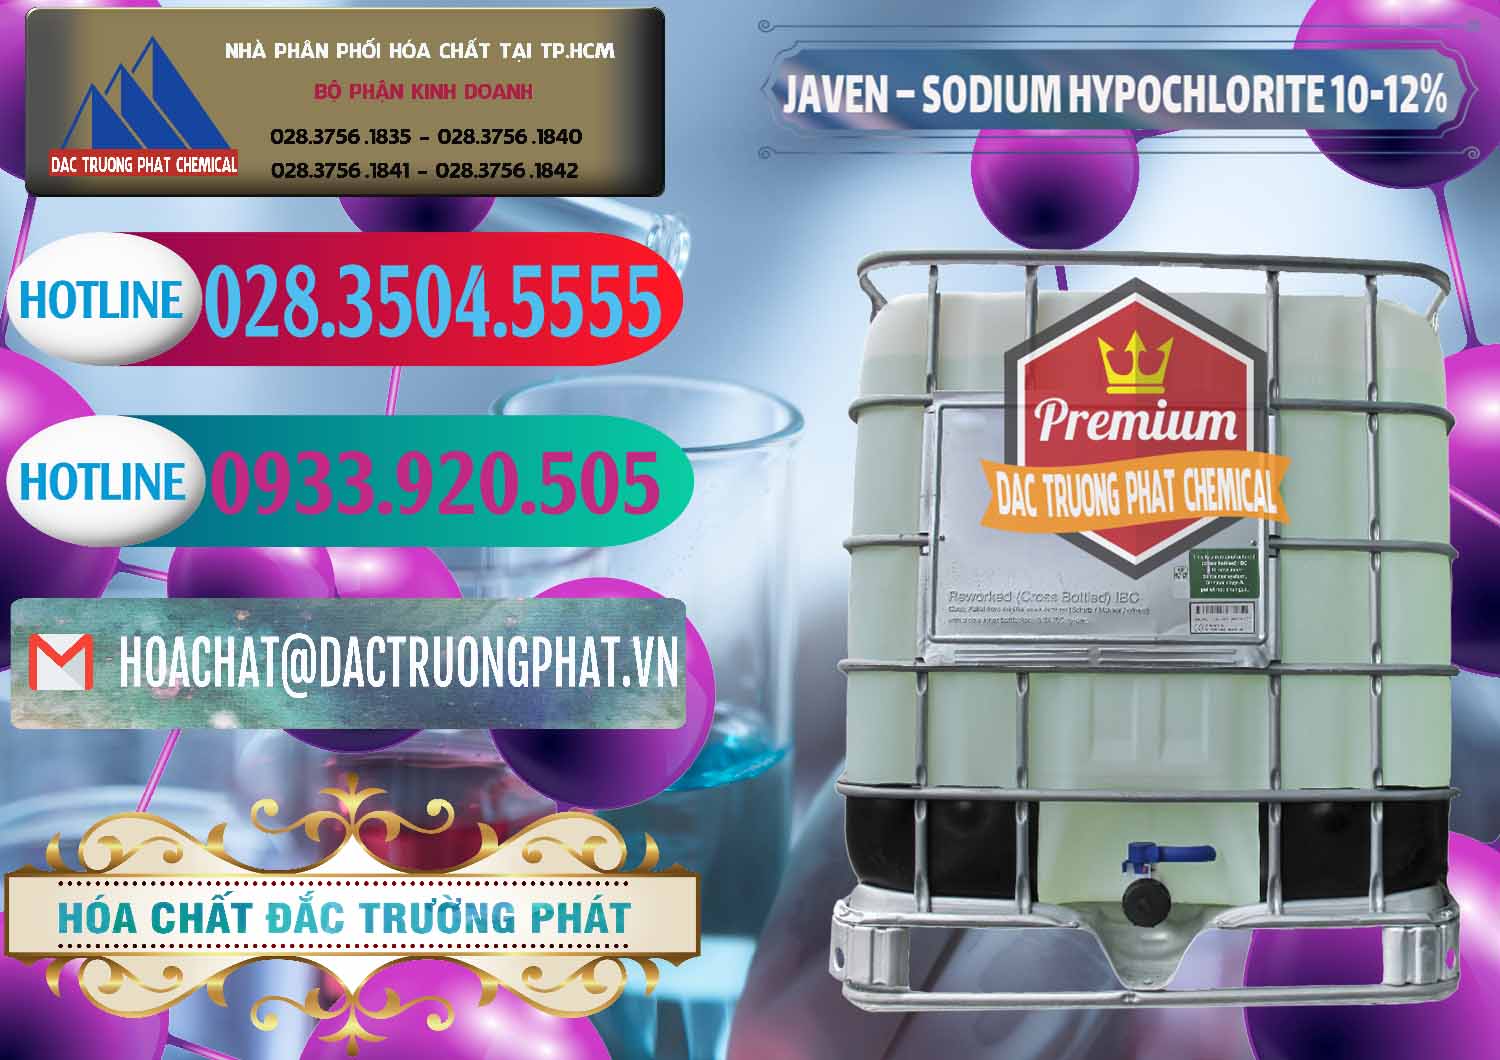 Cty kinh doanh - bán Javen - Sodium Hypochlorite 10-12% Việt Nam - 0188 - Công ty phân phối ( cung ứng ) hóa chất tại TP.HCM - truongphat.vn